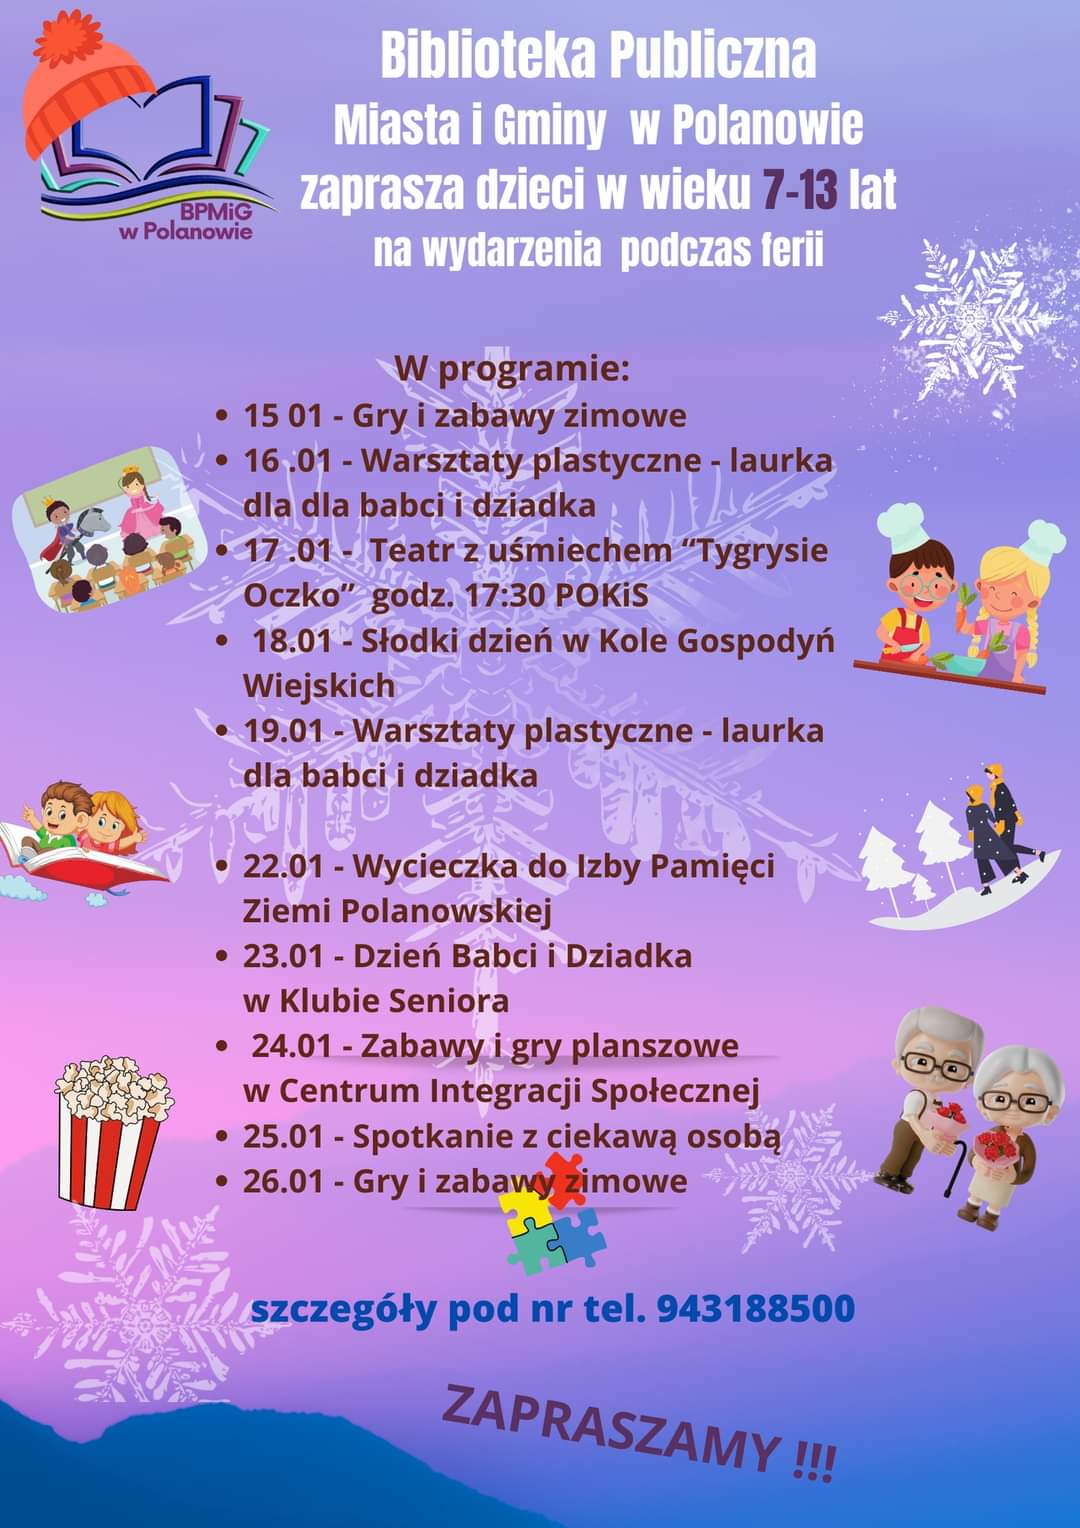 Plakat z zaproszeniem na ferie zimowe w Polanowie,biblioteka